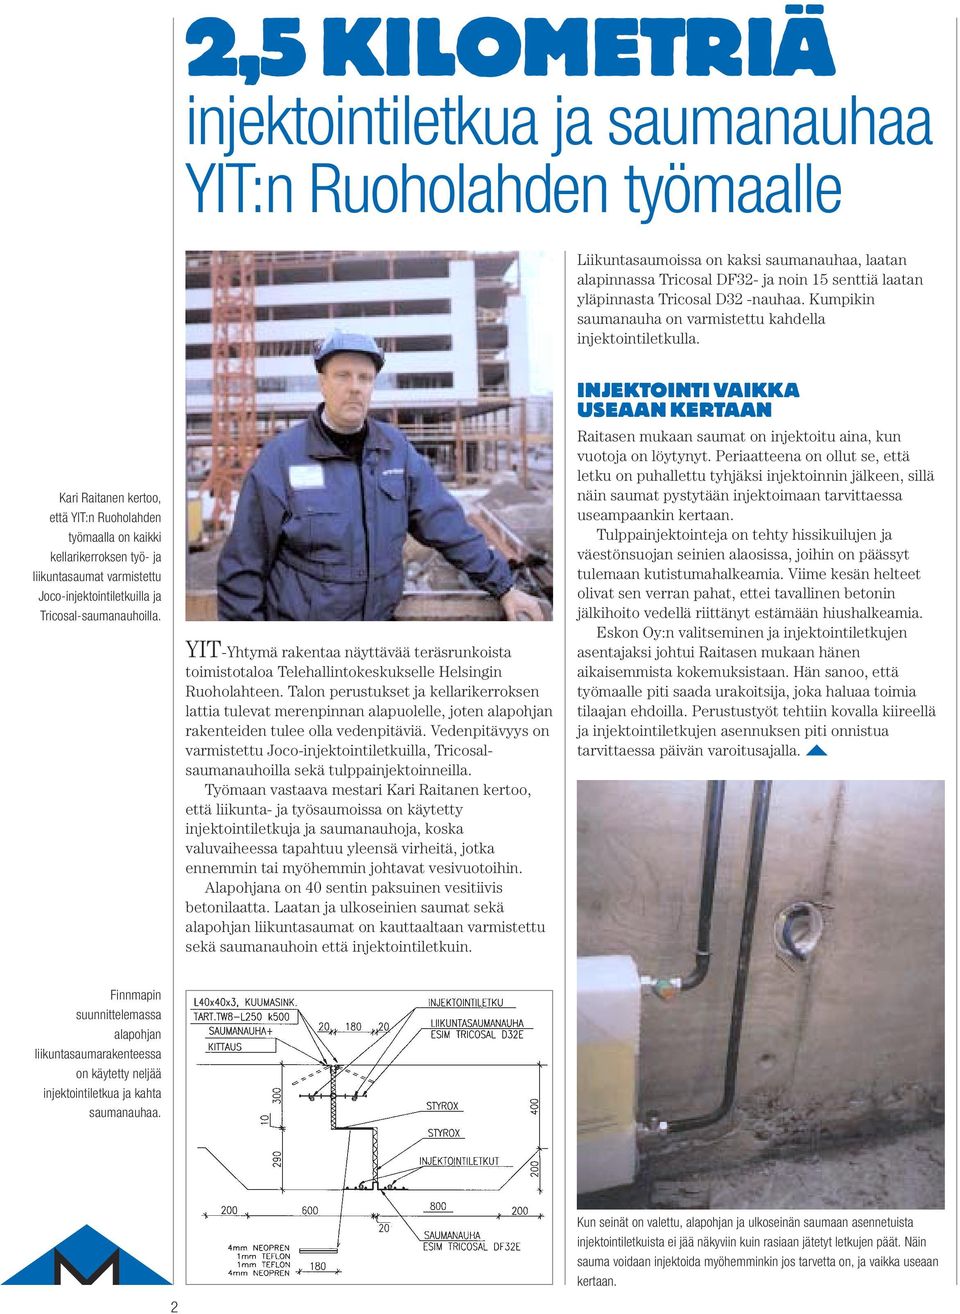 Kari Raitanen kertoo, että YIT:n Ruoholahden työmaalla on kaikki kellarikerroksen työ- ja liikuntasaumat varmistettu Joco-injektointiletkuilla ja Tricosal-saumanauhoilla.